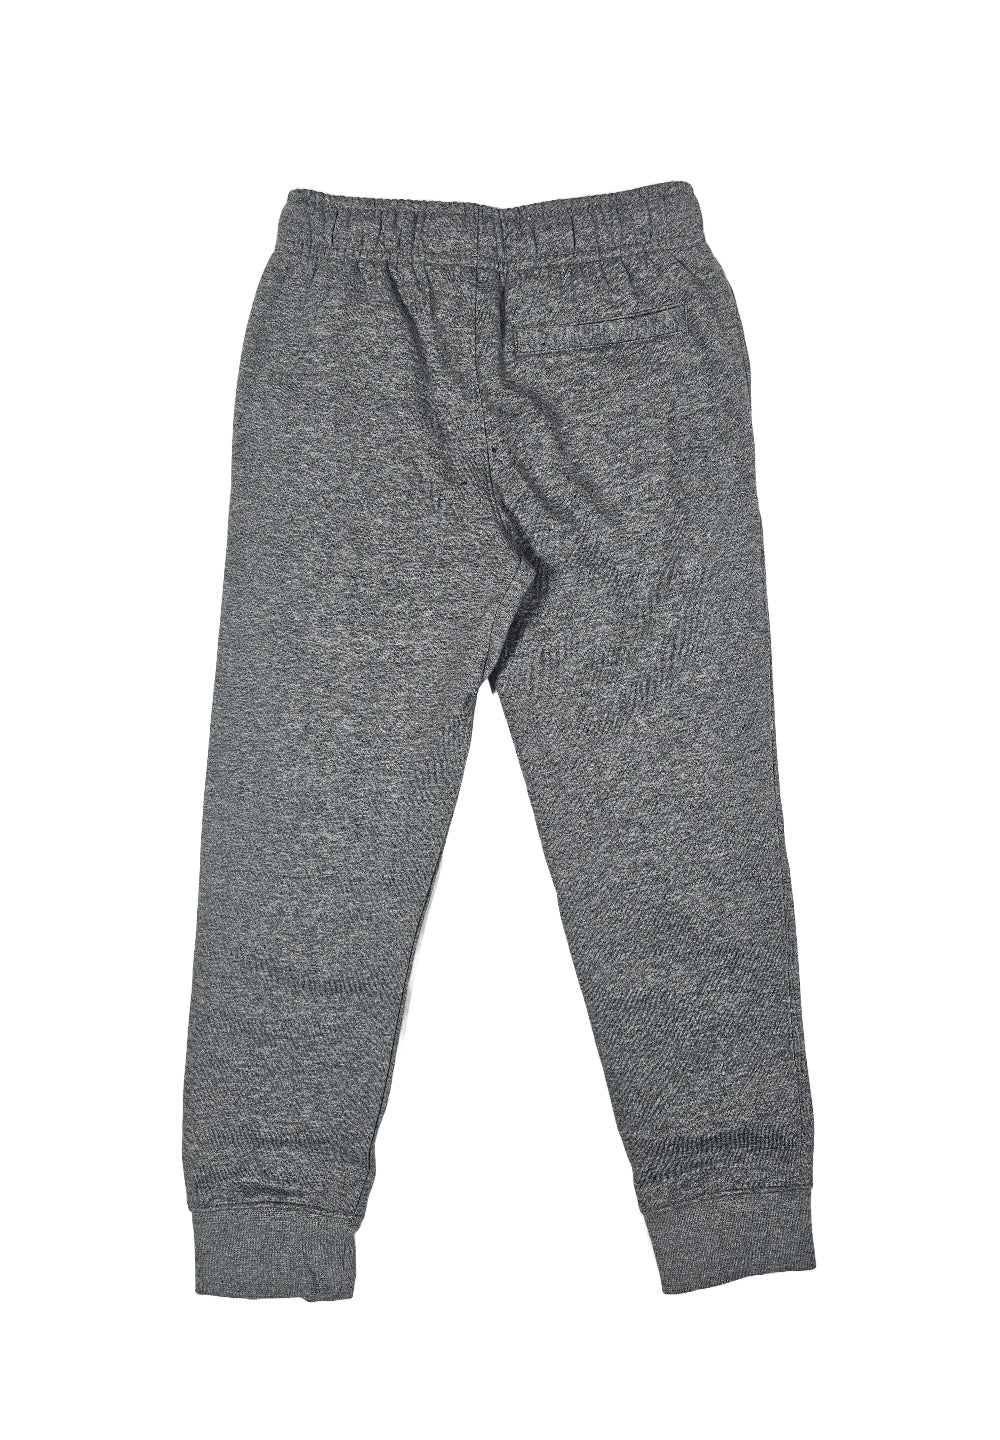 Gray fleece trousers for boy